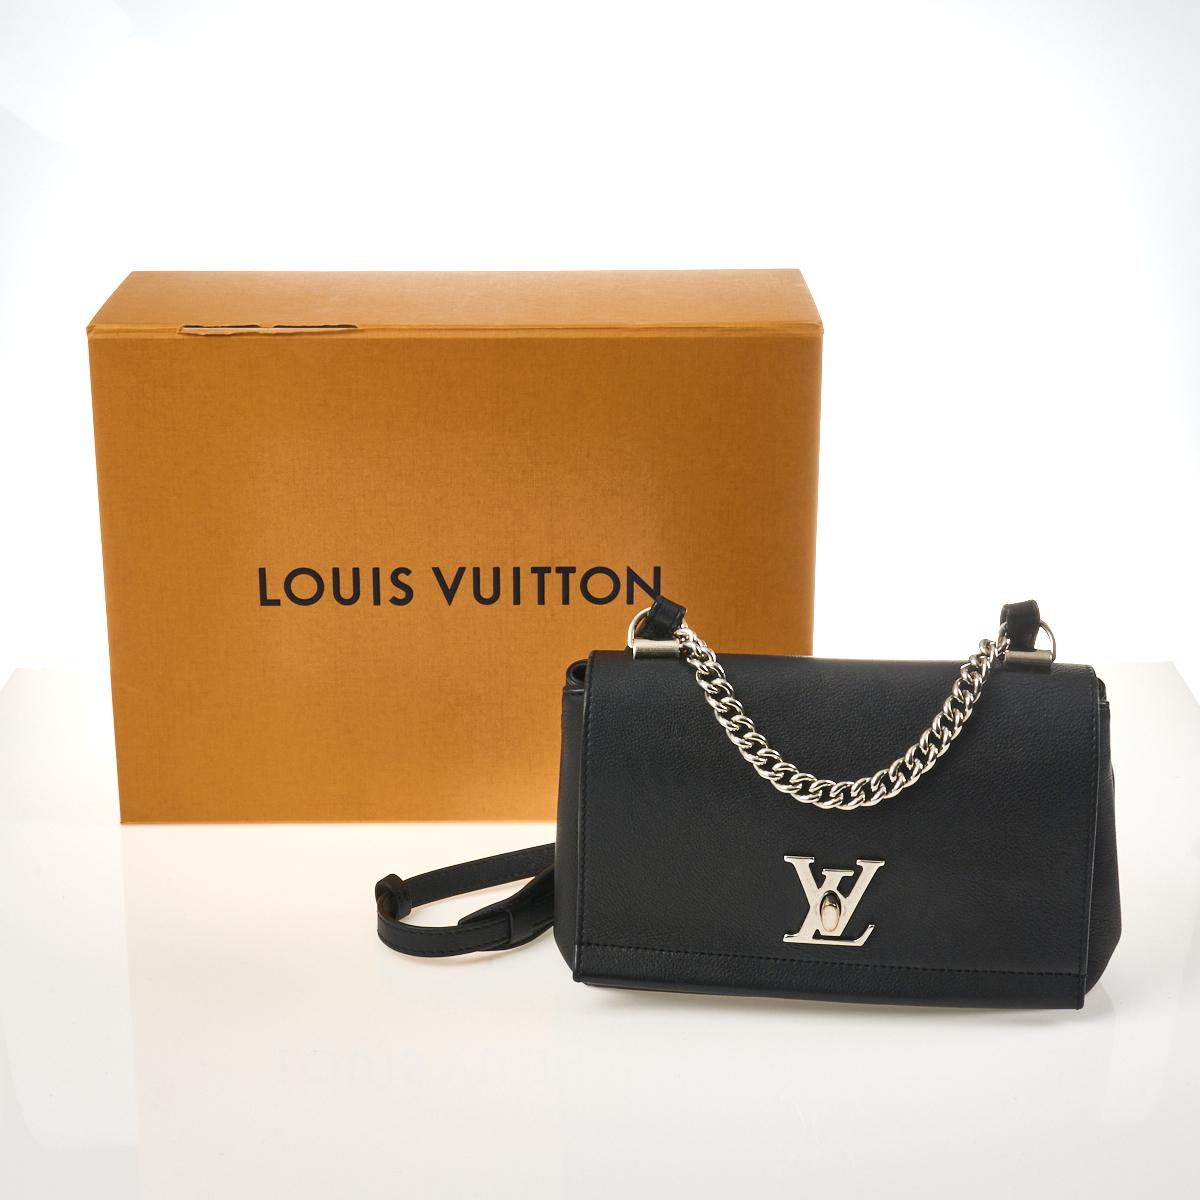 Sold at Auction: Louis Vuitton, Louis Vuitton - NEW LV Lockme